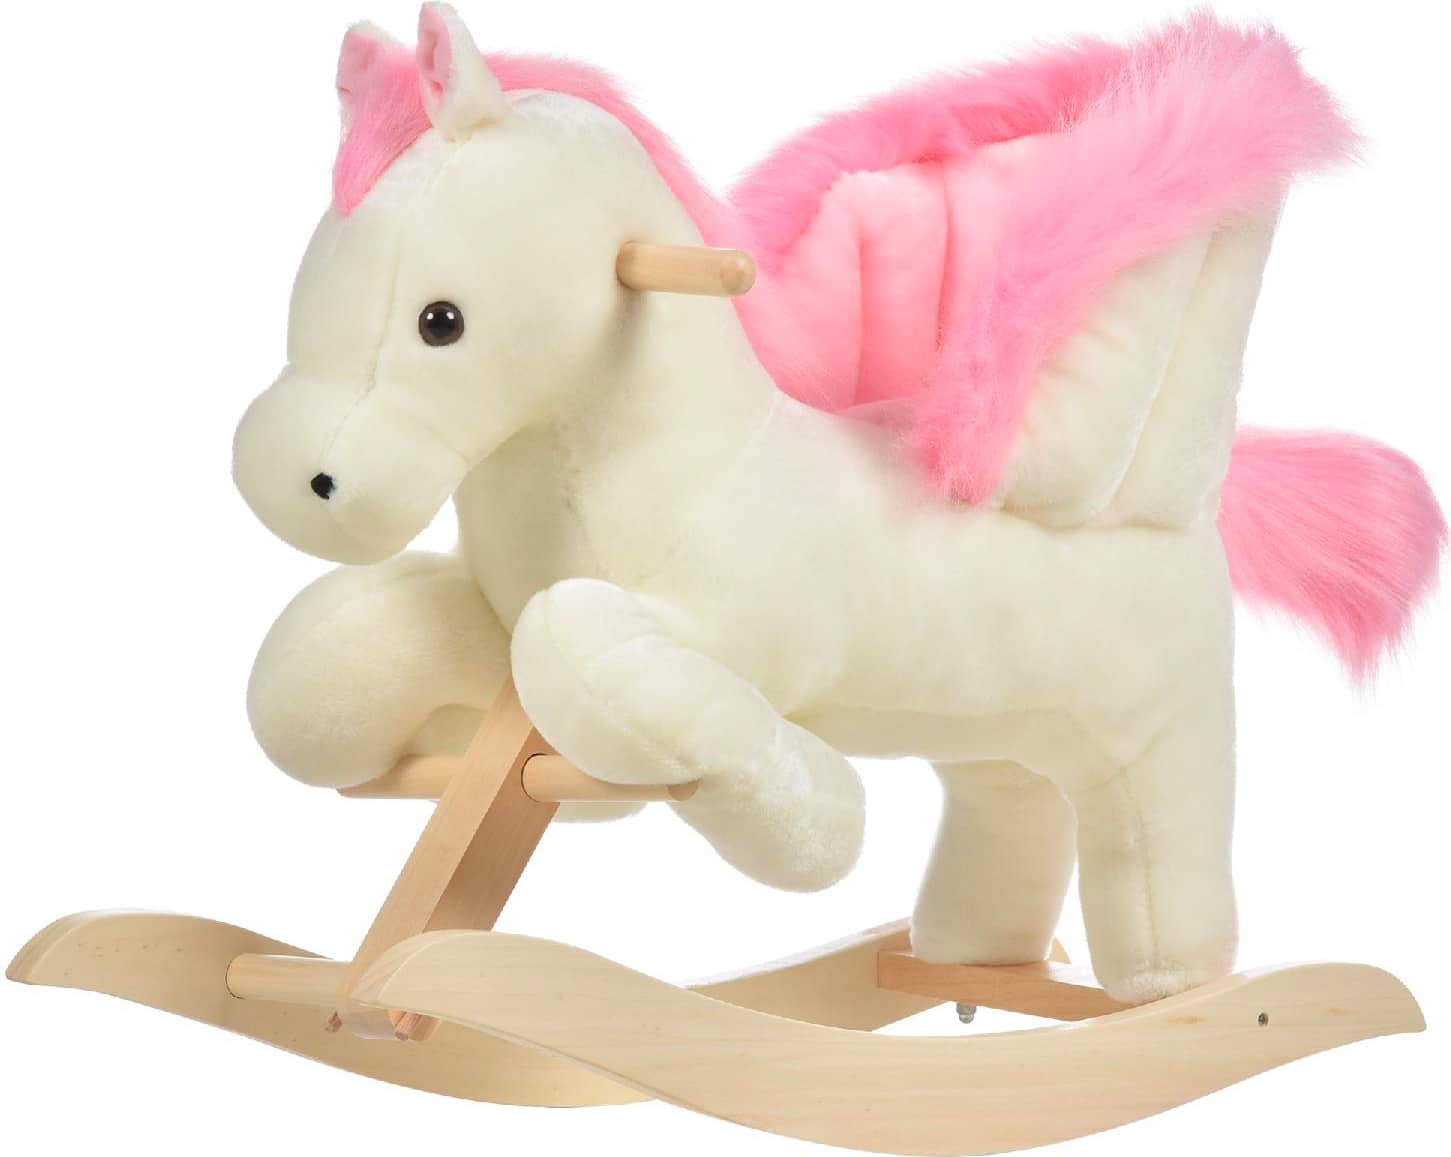 dechome 330114 cavallo a dondolo bianco e rosa con suoni e struttura in legno di pioppo per bambini 18-36 mesi - 330114